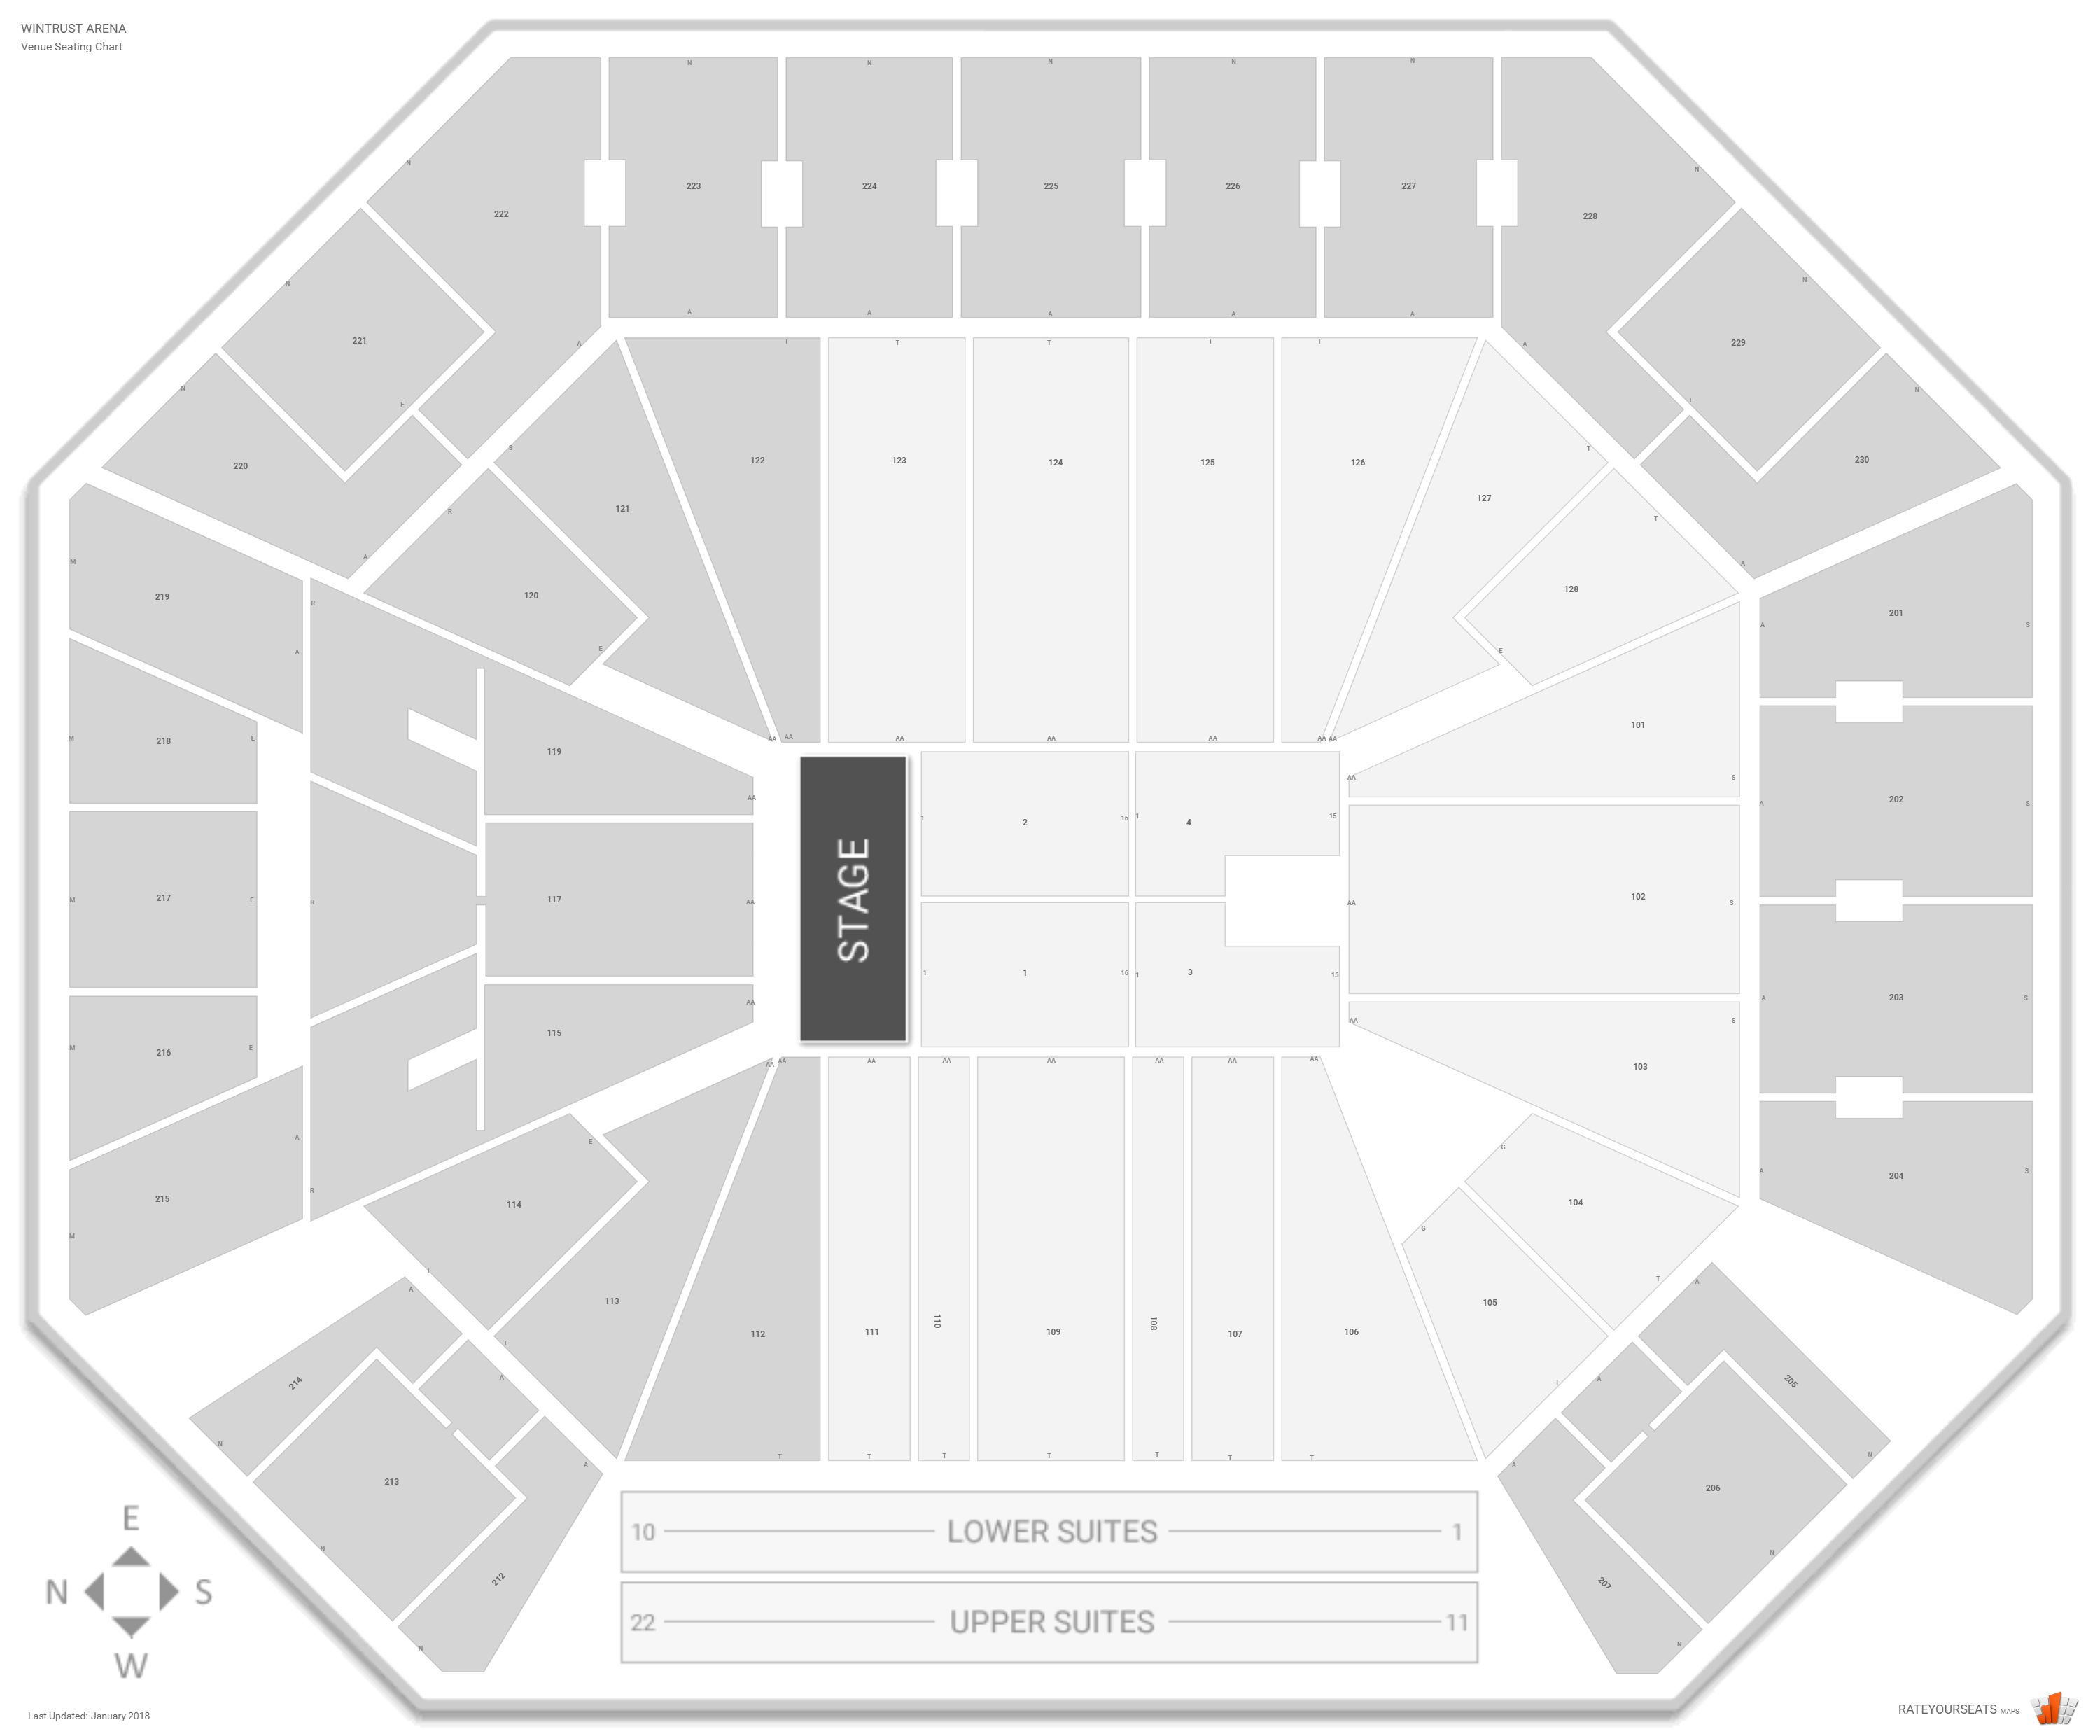 Wintrust Arena Concert Seating Guide - RateYourSeats.com